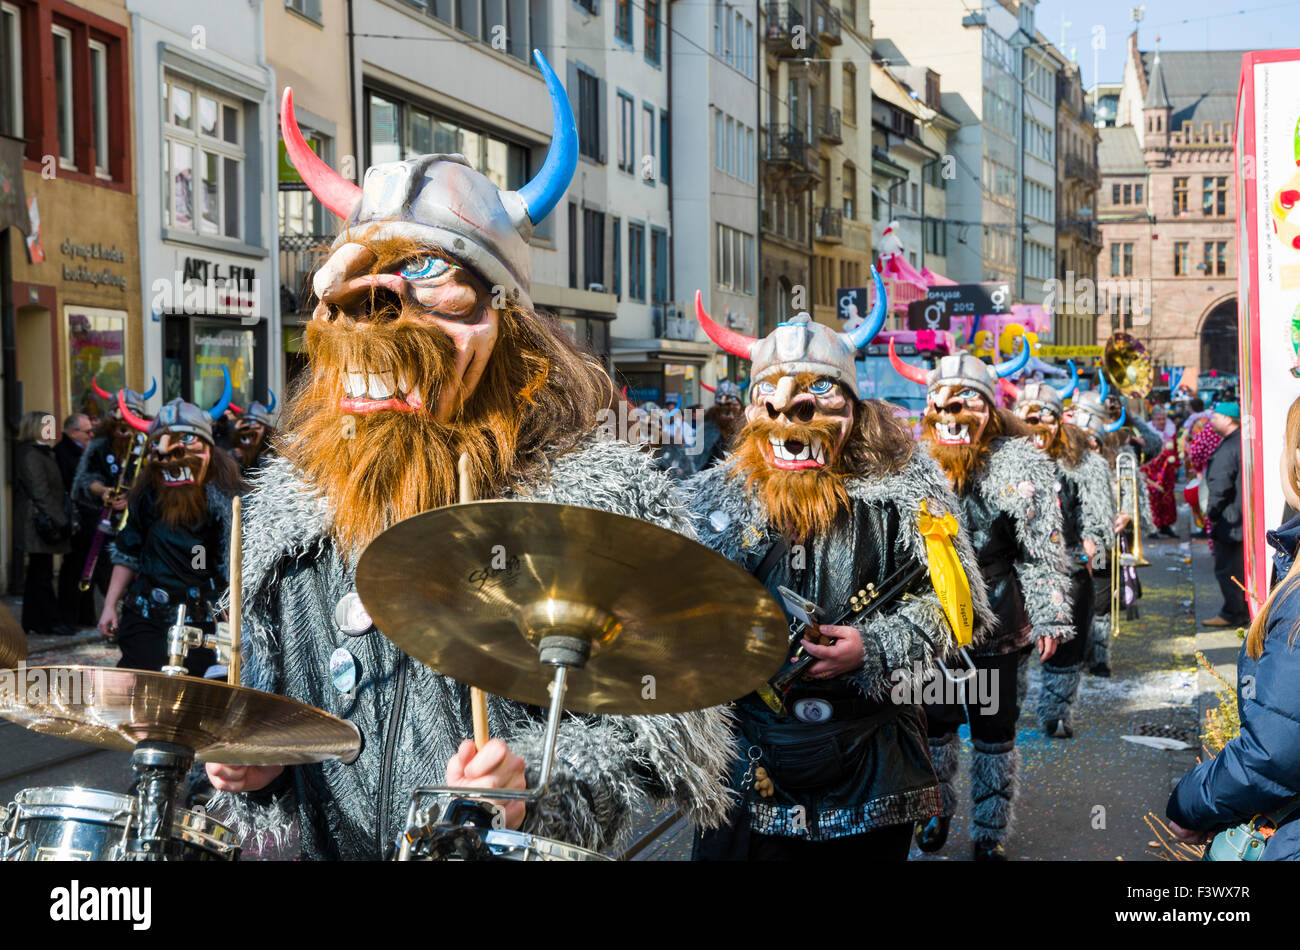 La grande procession de basler fasnet est l'un des événements les plus spectaculaires, les bandes masquées jouent le célèbre guggenmusic Banque D'Images